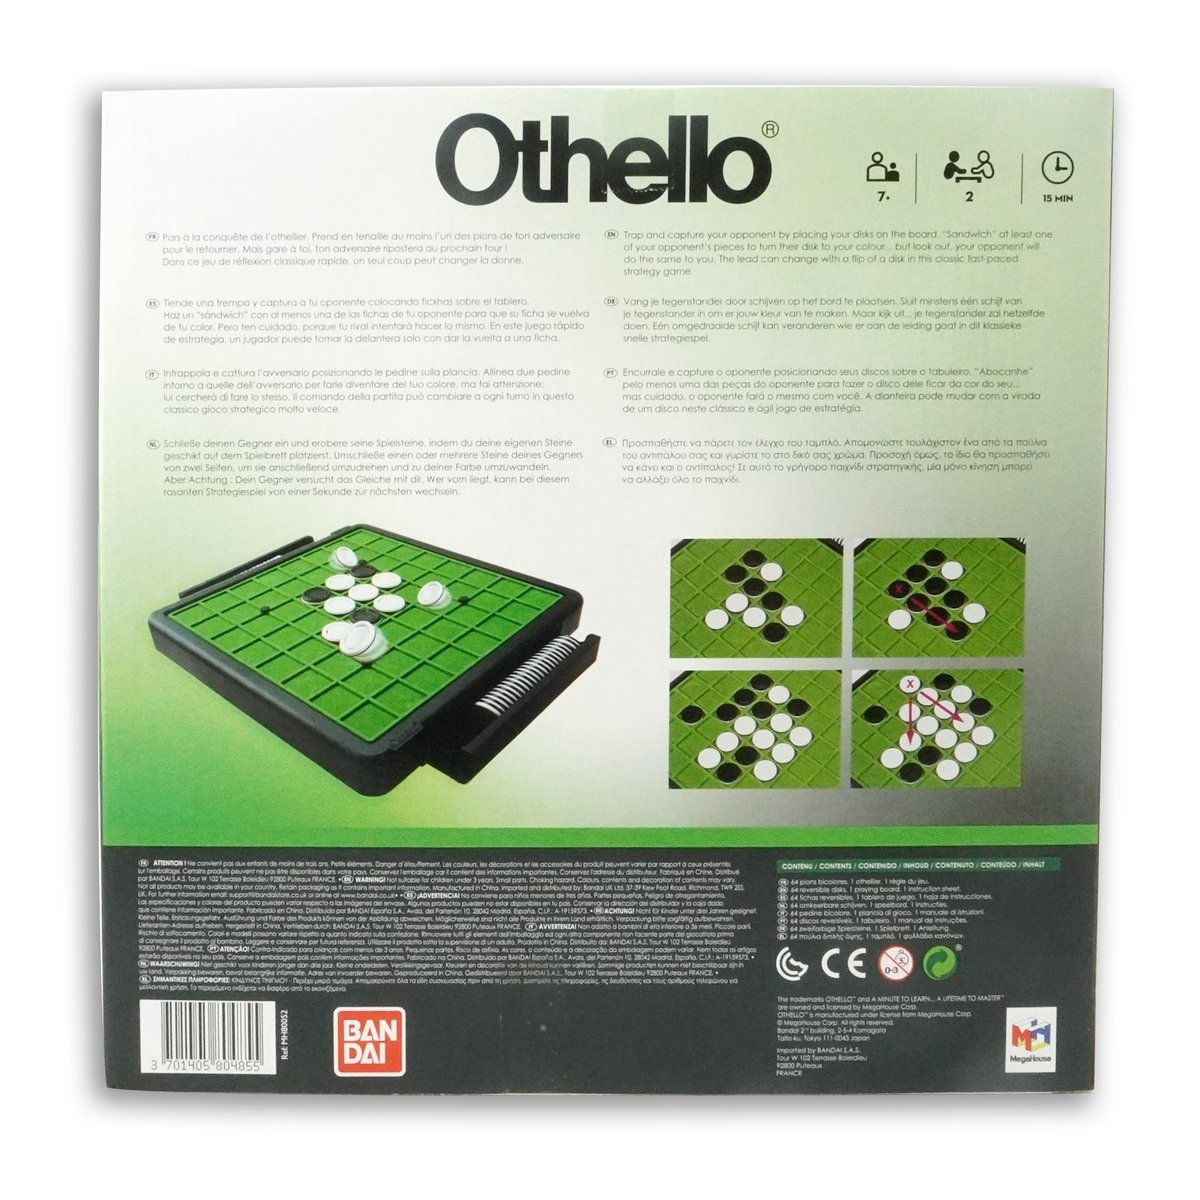 Bandai Othello société-Jeu de stratégie et de réflexion-2 joueurs-1